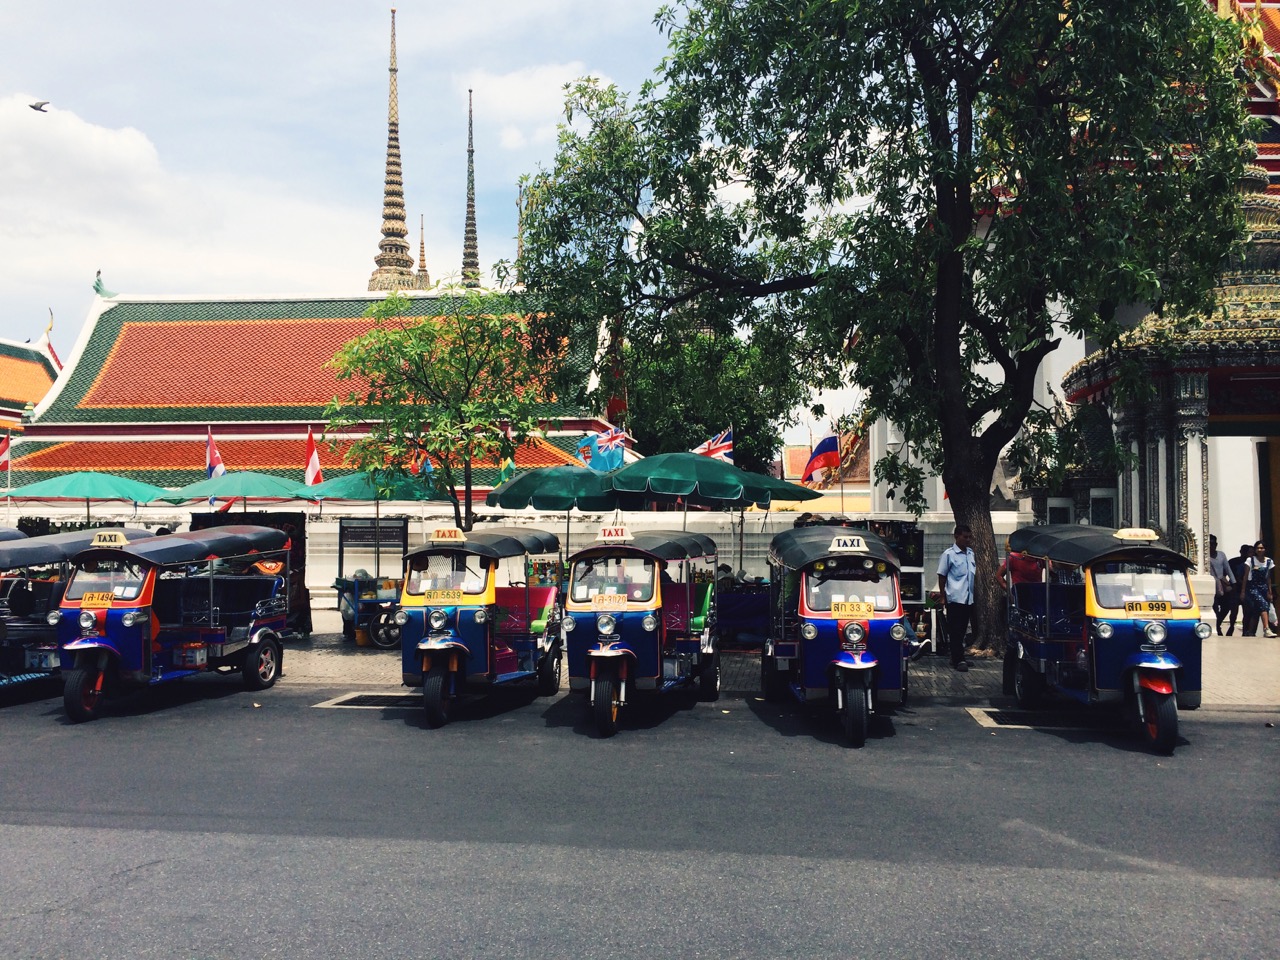 Как сэкономить в путешествии: моторикши в Бангкоке, Таиланд